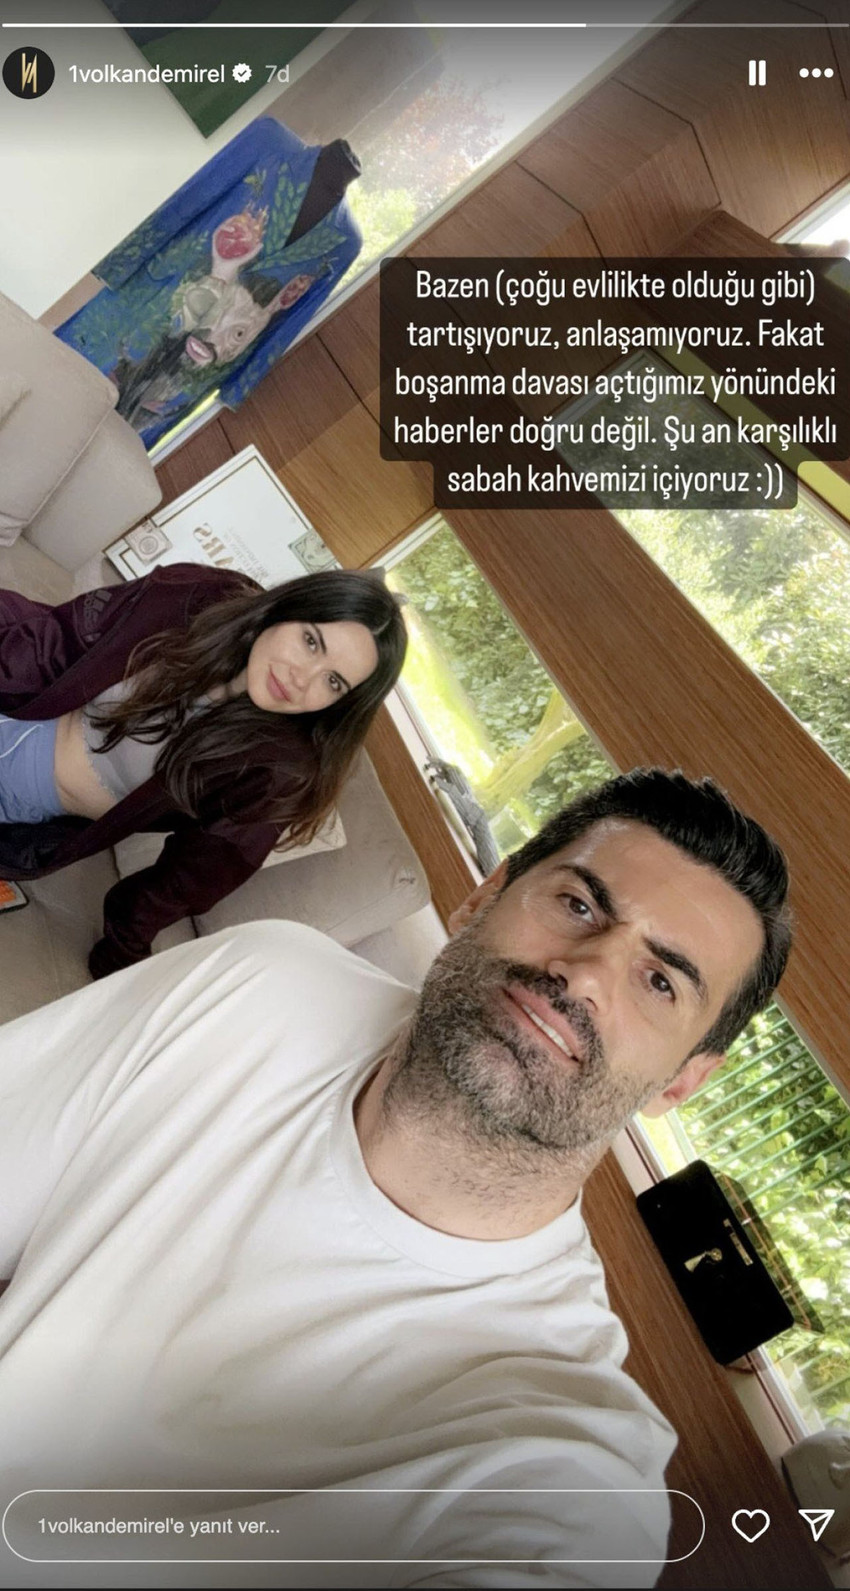 Hatayspor'un eski teknik direktörü Volkan Demirel ile 13 yıllık eşi Zeynep Demirel boşanma kararı aldığı iddia edildi. Volkan Demirel ise sosyal medya hesabından ayrılık iddialarını yalanladı.